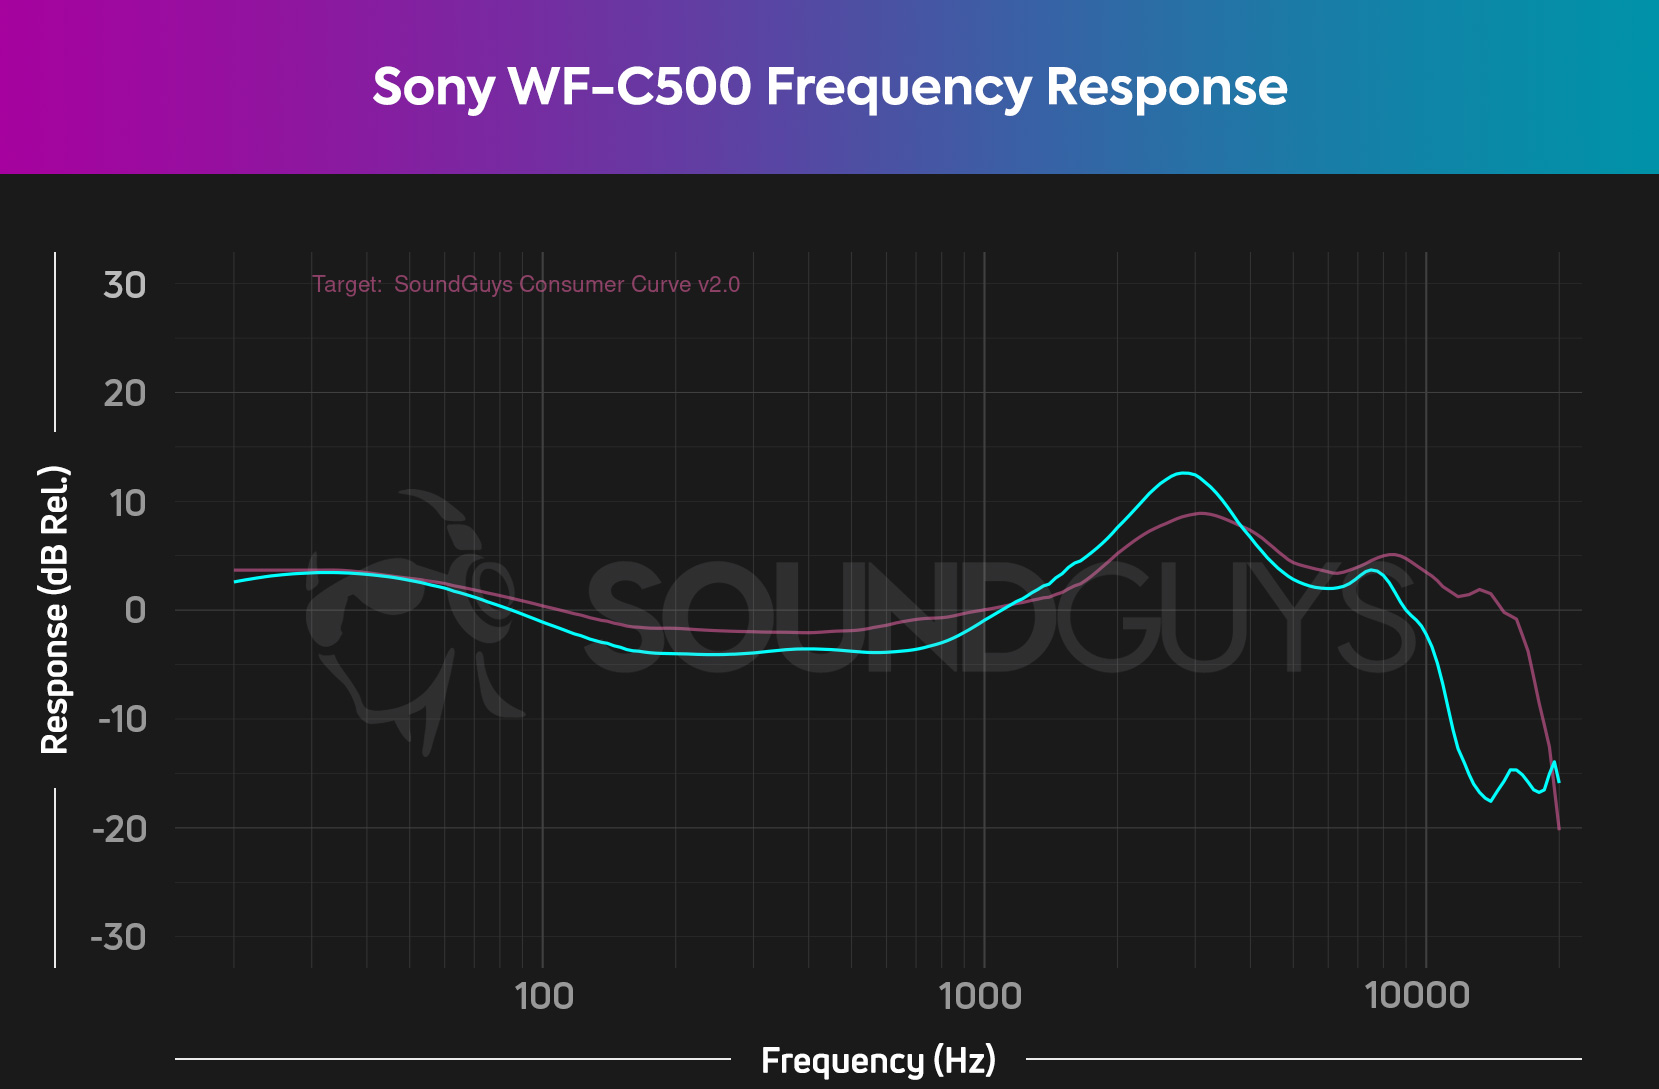 Sony WF-C500 True Wireless In-Ear Earbud TWS Bluetooth Headphones with Mic  & IPX4 Water